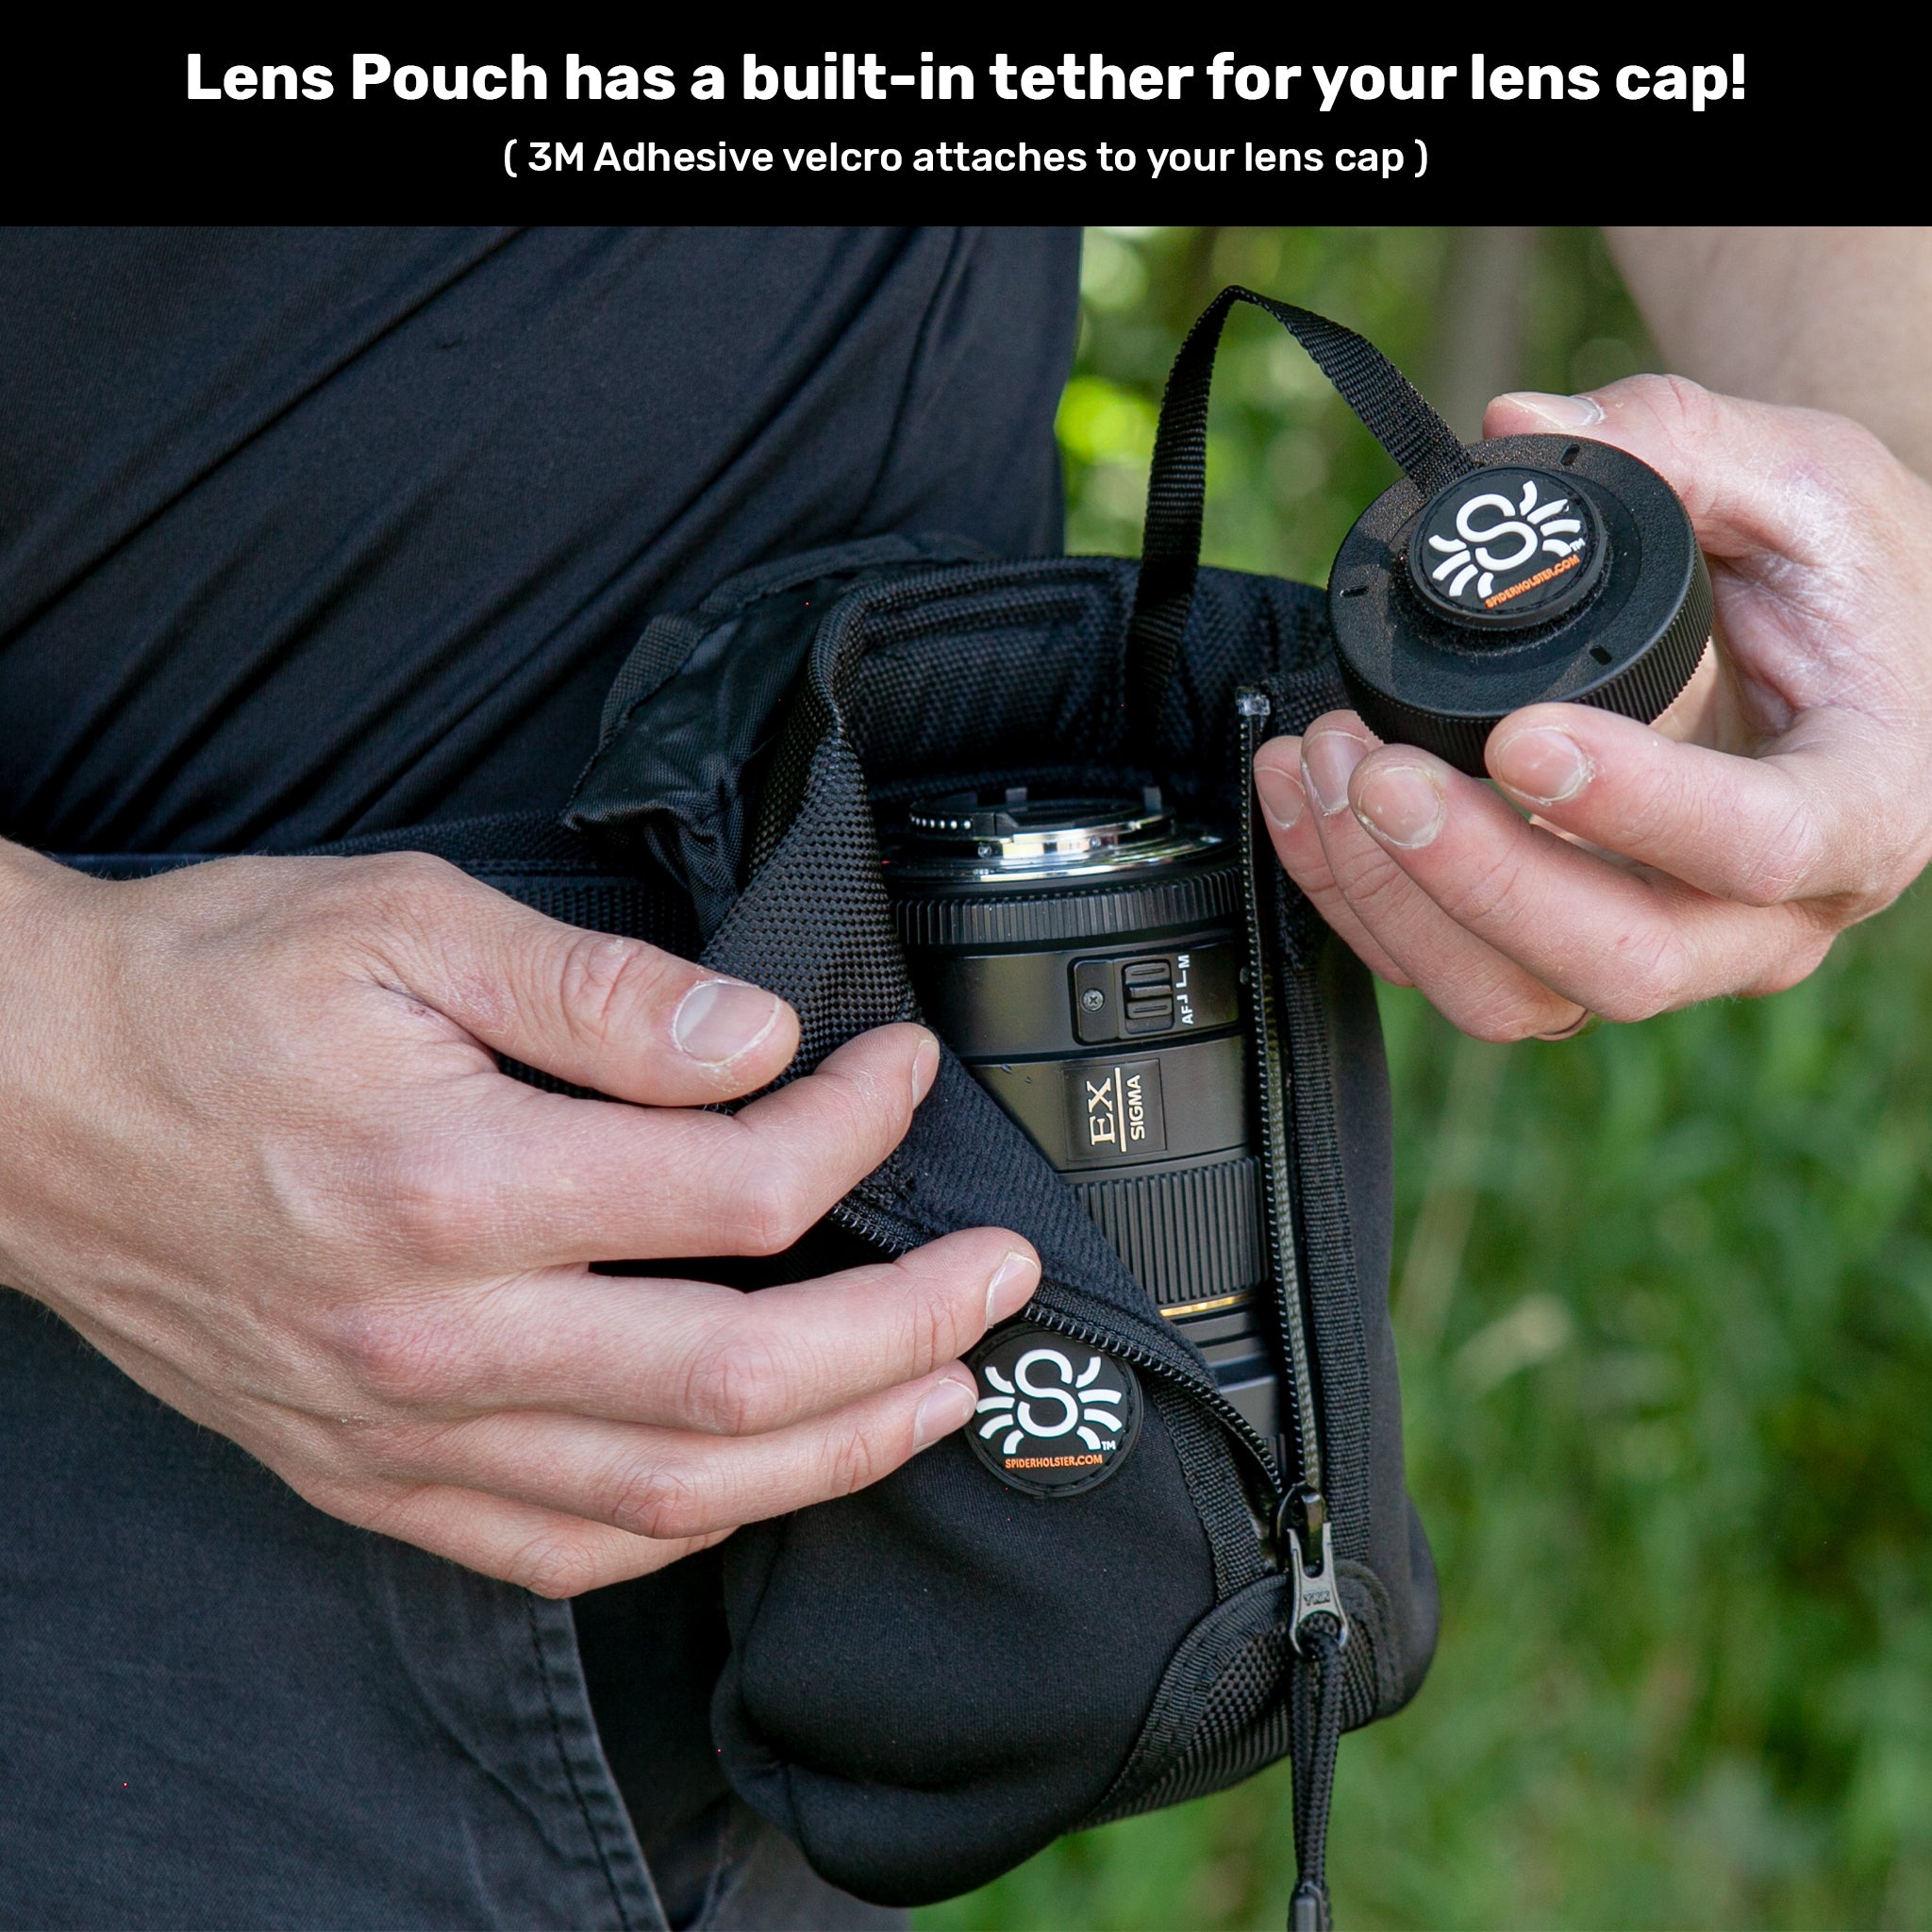 SpiderPro Lens Pouches